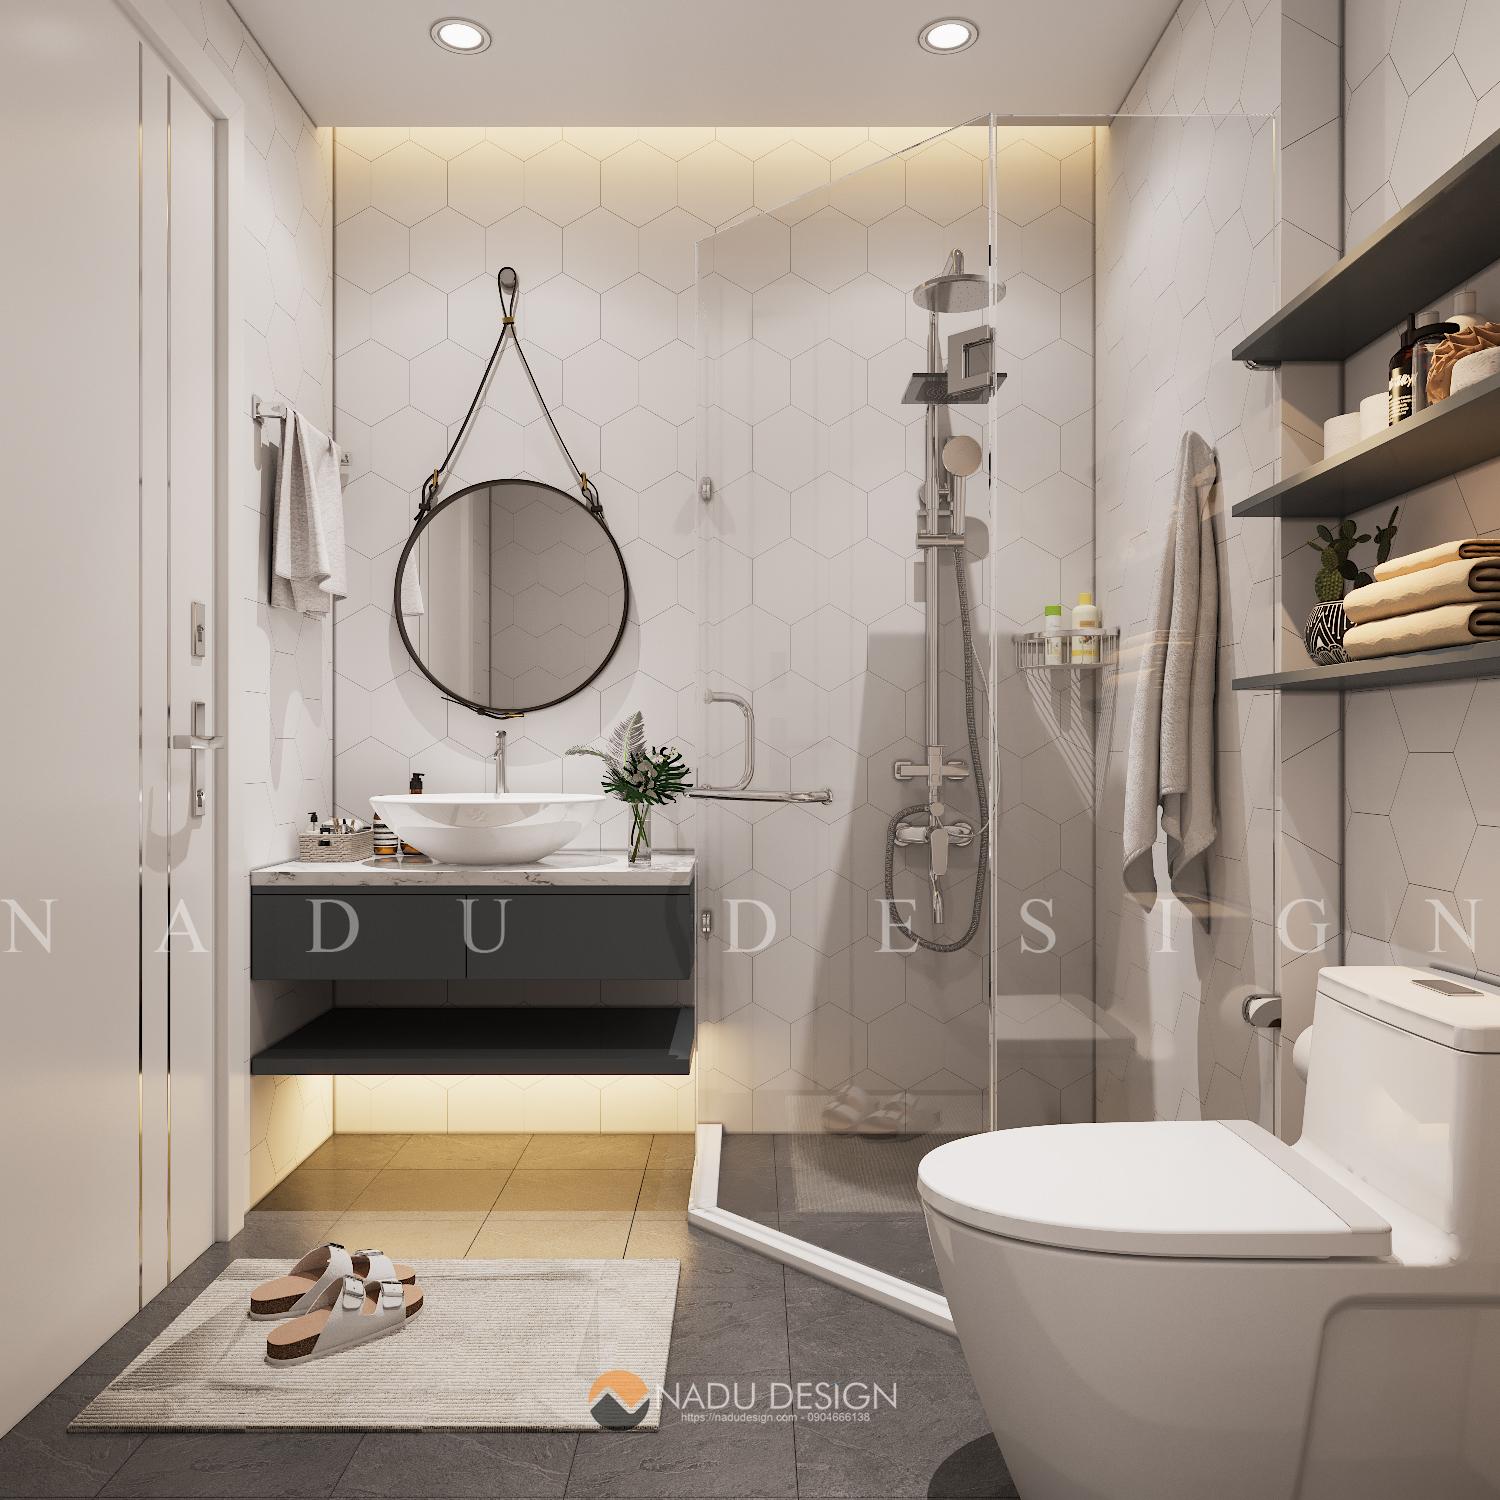 Thiết kế nhà vệ sinh âm sàn hoàn toàn giấu kín đèn nhà vệ sinh giúp tạo ra một không gian phòng tắm tinh tế và hiện đại. Không chỉ giúp tiết kiệm diện tích mà còn thể hiện được sự độc đáo và sáng tạo của chủ nhà trong việc thiết kế nội thất.